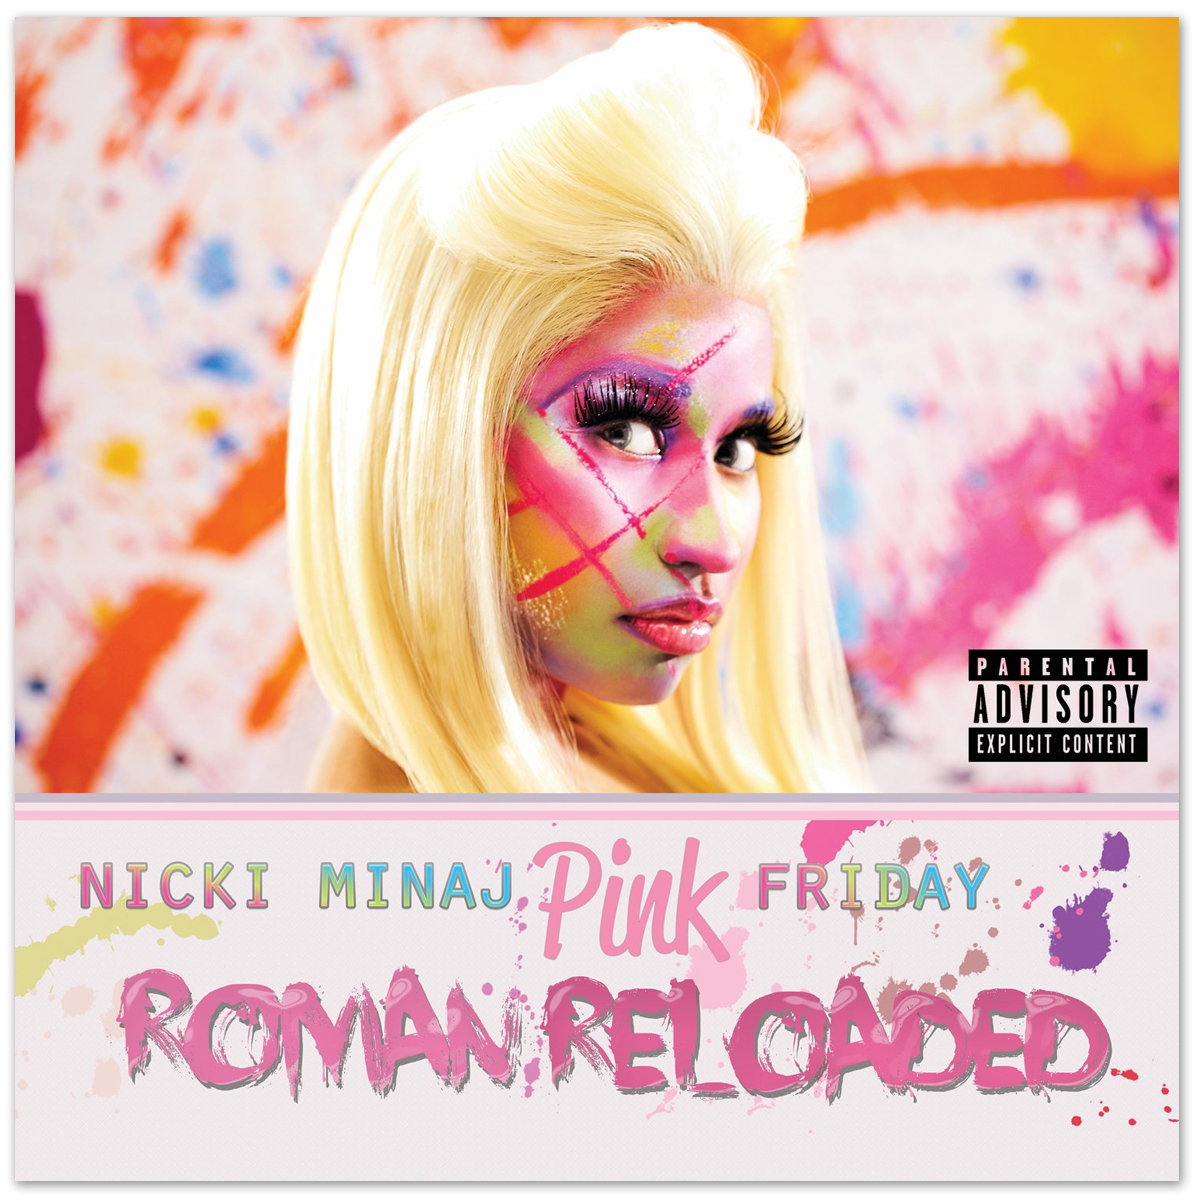 Nicki Minaj Pink Friday Roman Reloaded By Musicalpotter